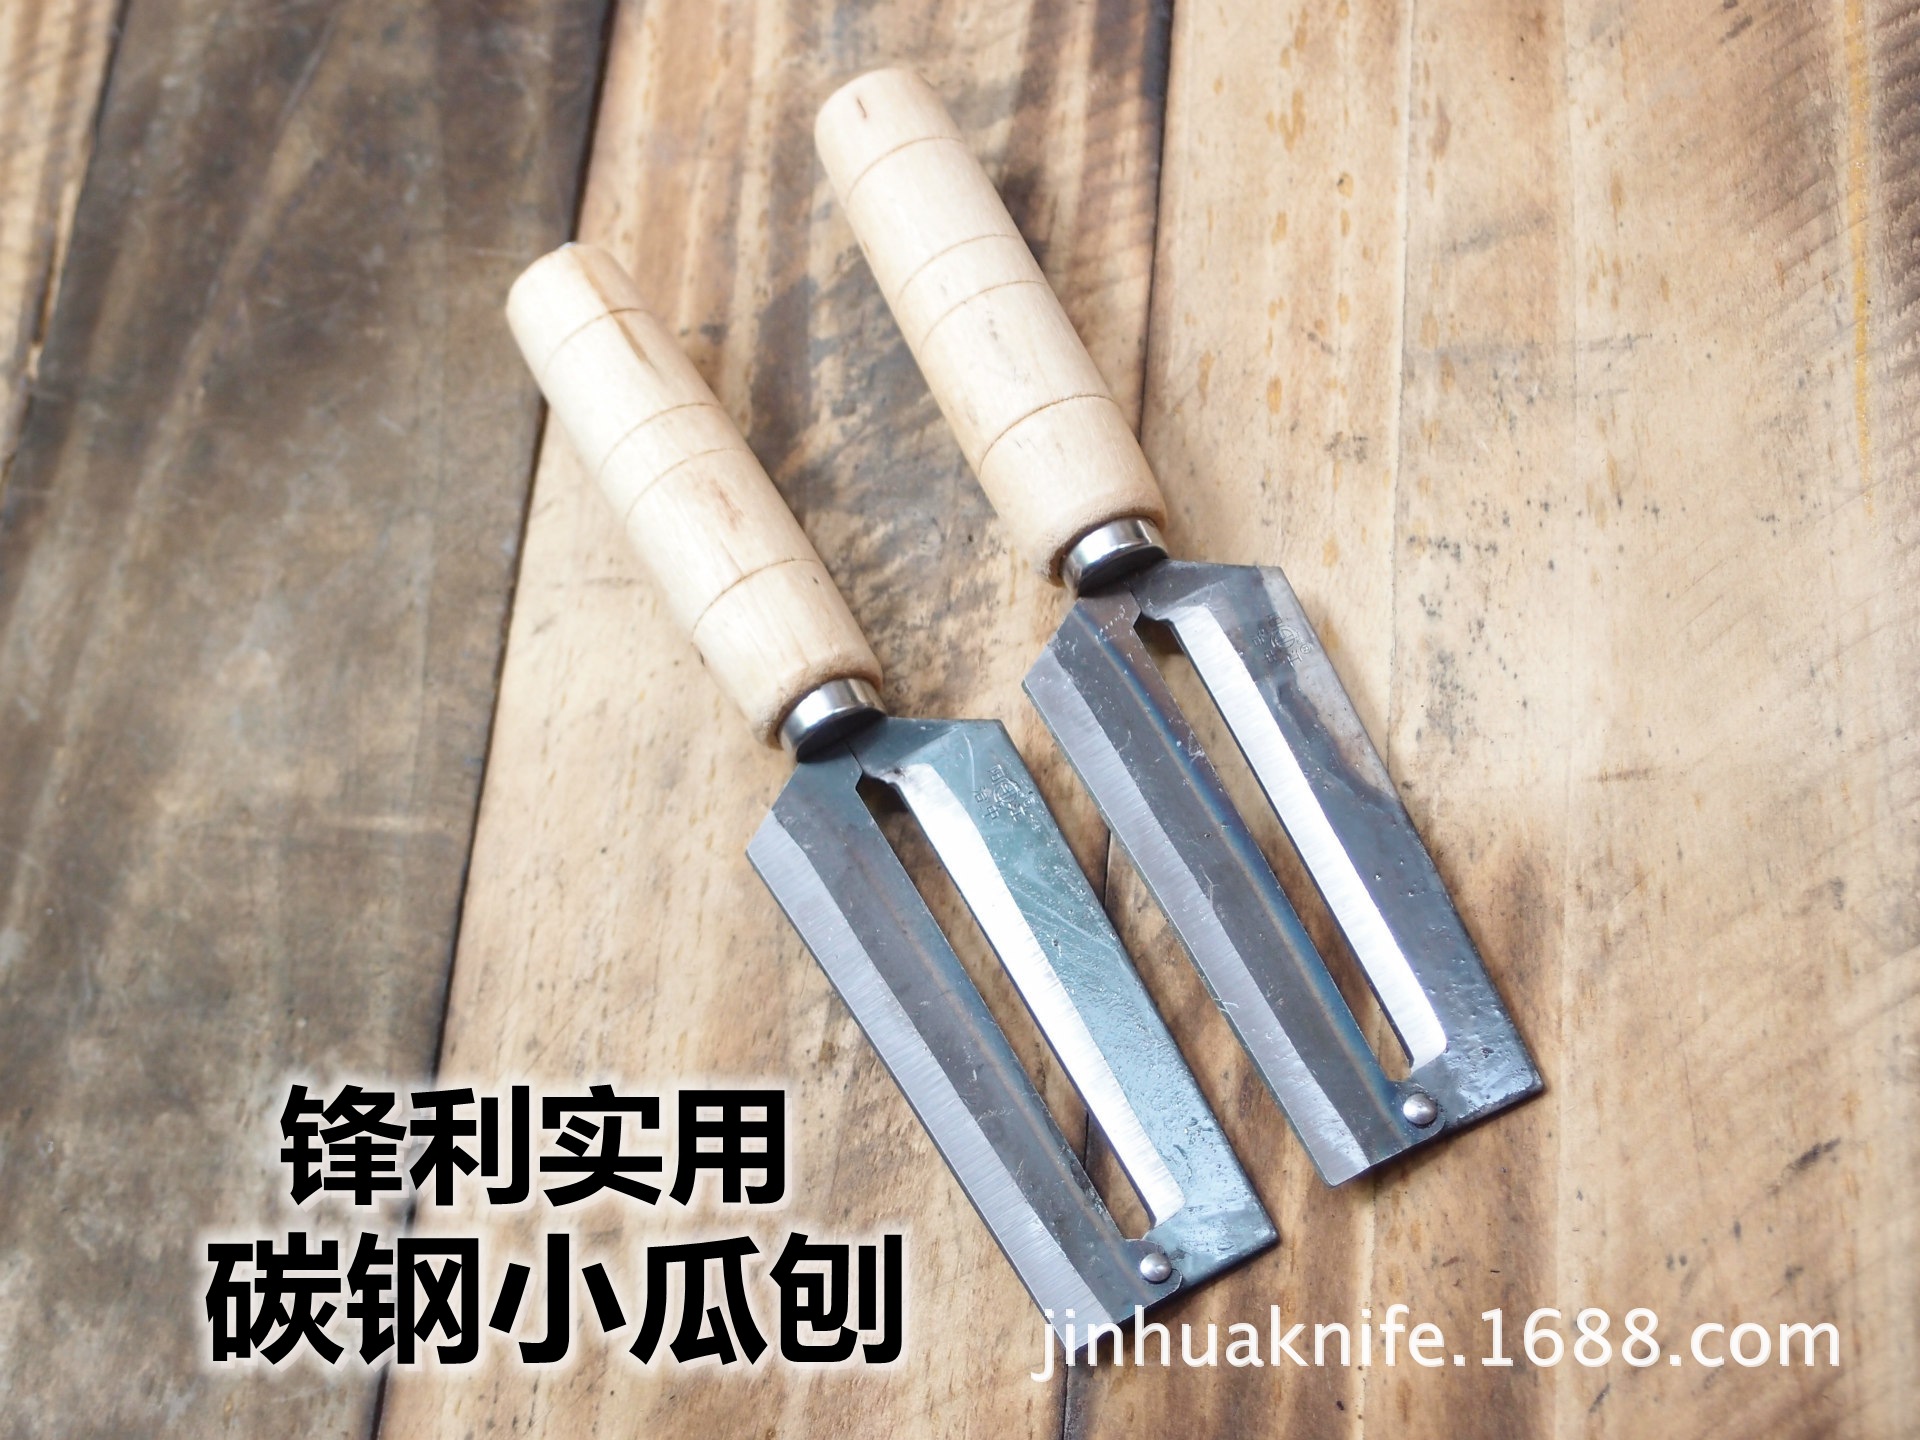 治中碳钢瓜刨刀 果皮刨刀 削皮刀 横刨刀 锋利实用削皮器 水果刀